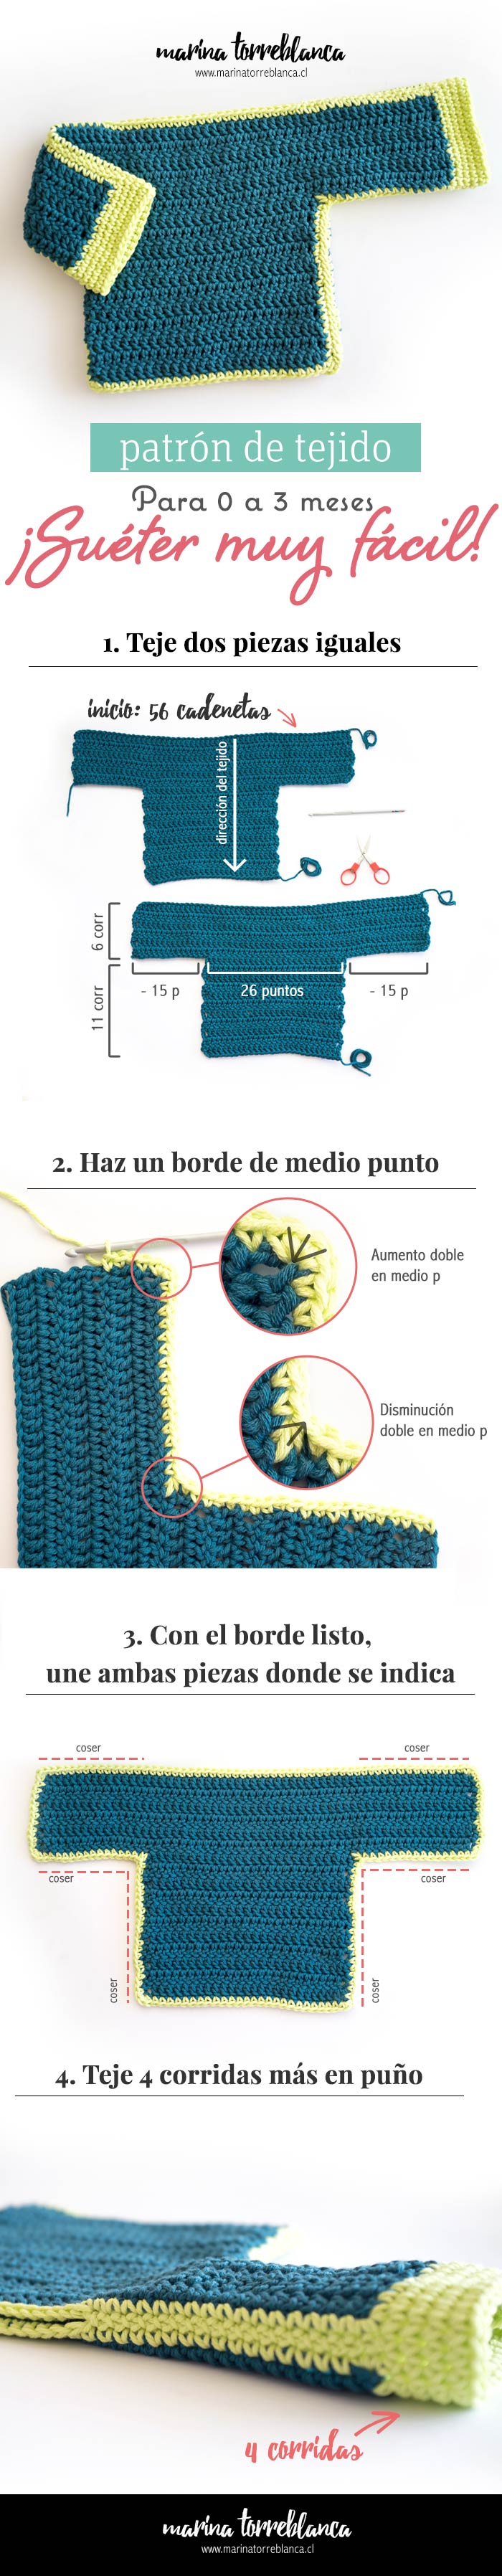 Patron gratis de tejido, sueter para bebe muy facil a crochet - Blog de marinatorreblanca.cl